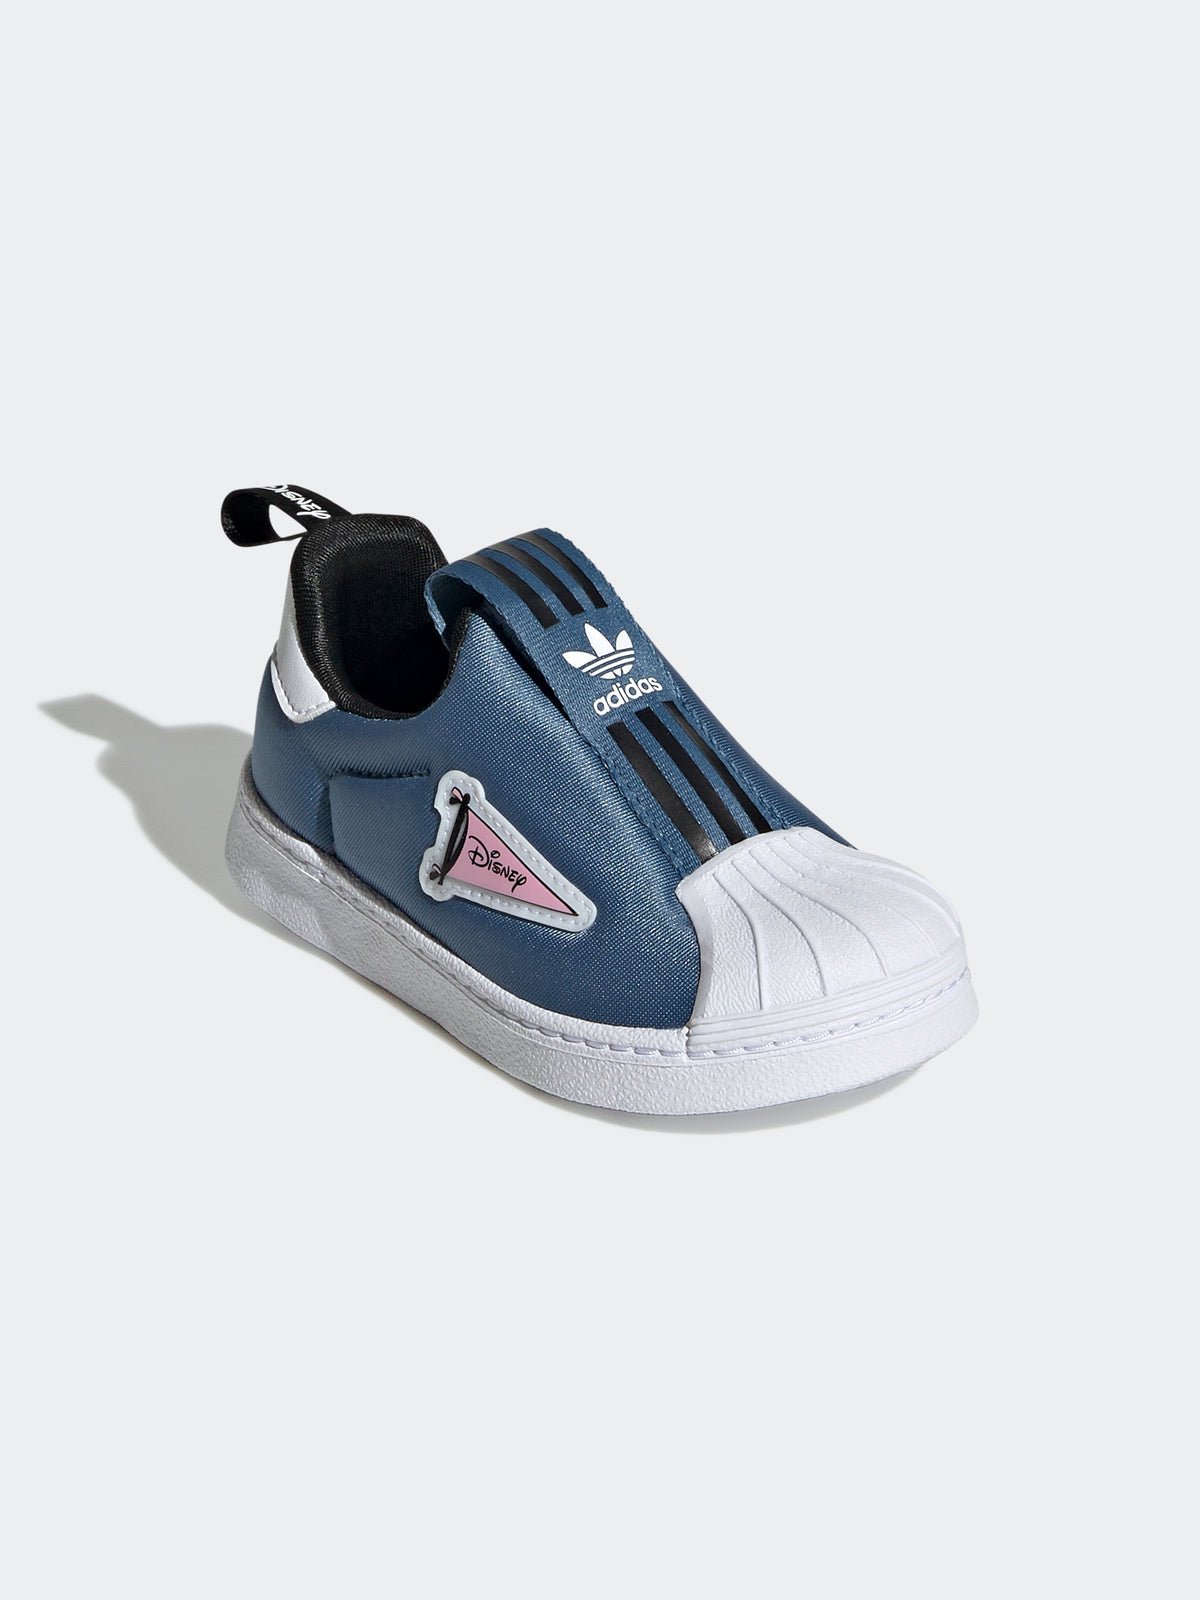 נעלי סניקרס SUPERSTAR 360 / תינוקות